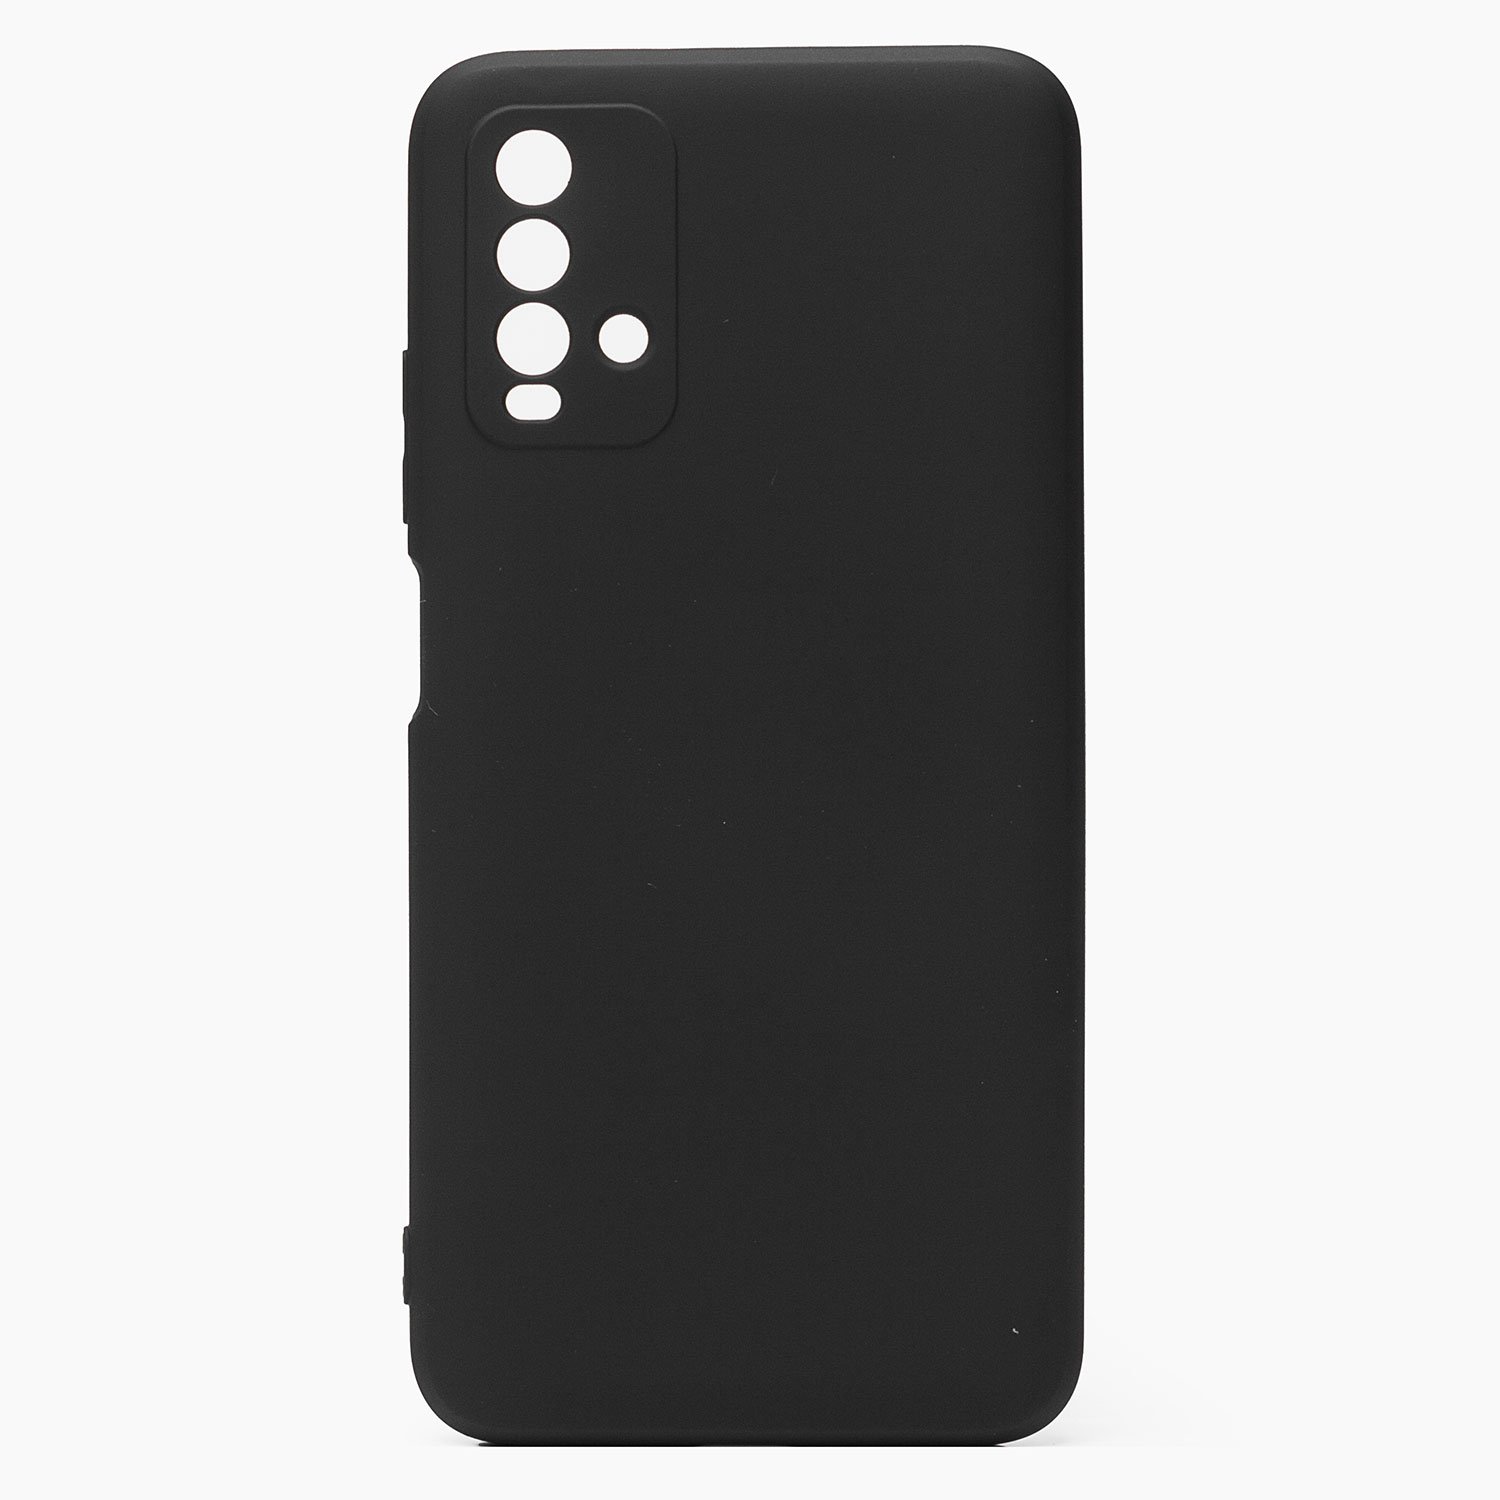 Чехол-накладка Activ Full Original Design для смартфона Xiaomi Redmi 9T, силикон, черный